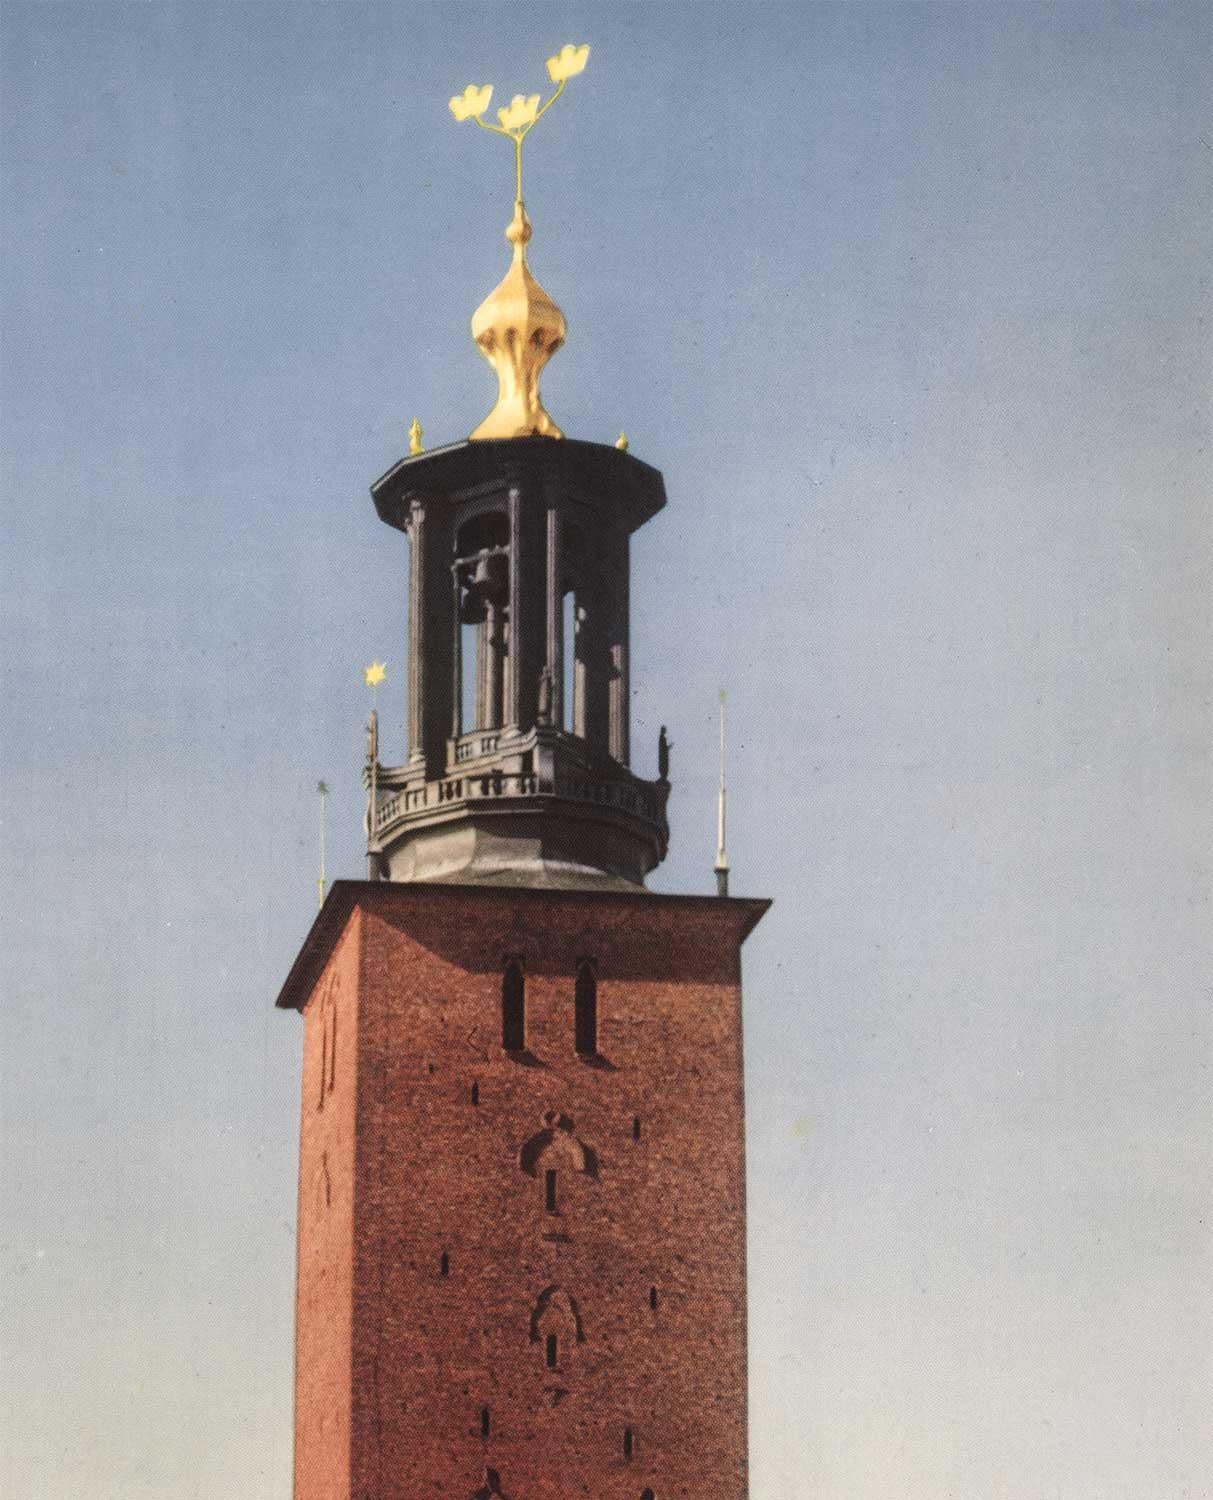 Original Stockholm (Schweden), „Stadt auf dem Wasser“, Vintage-Reiseplakat – Print von Lars Ryde